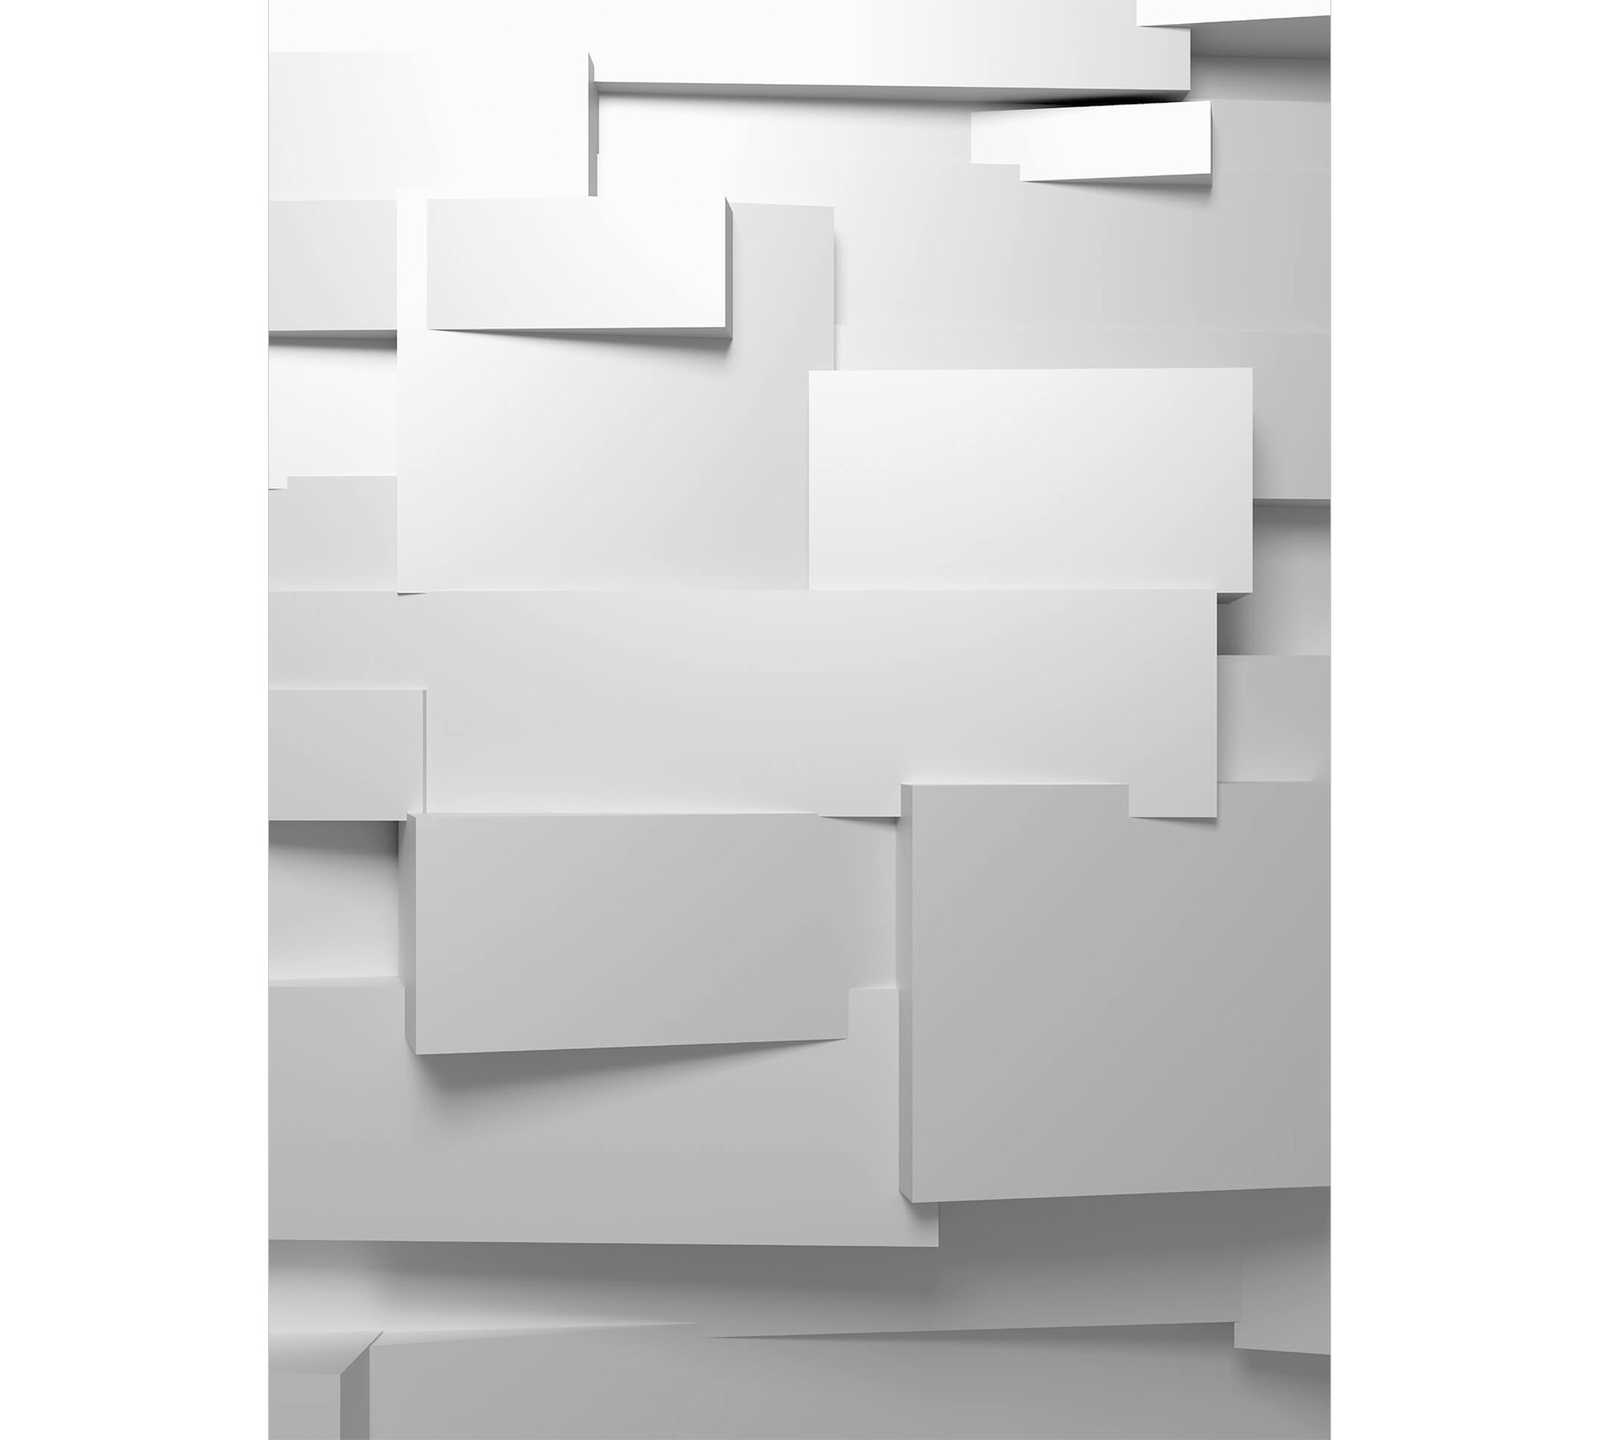 Fotomurali effetto grafico 3D, formato verticale - grigio-bianco
